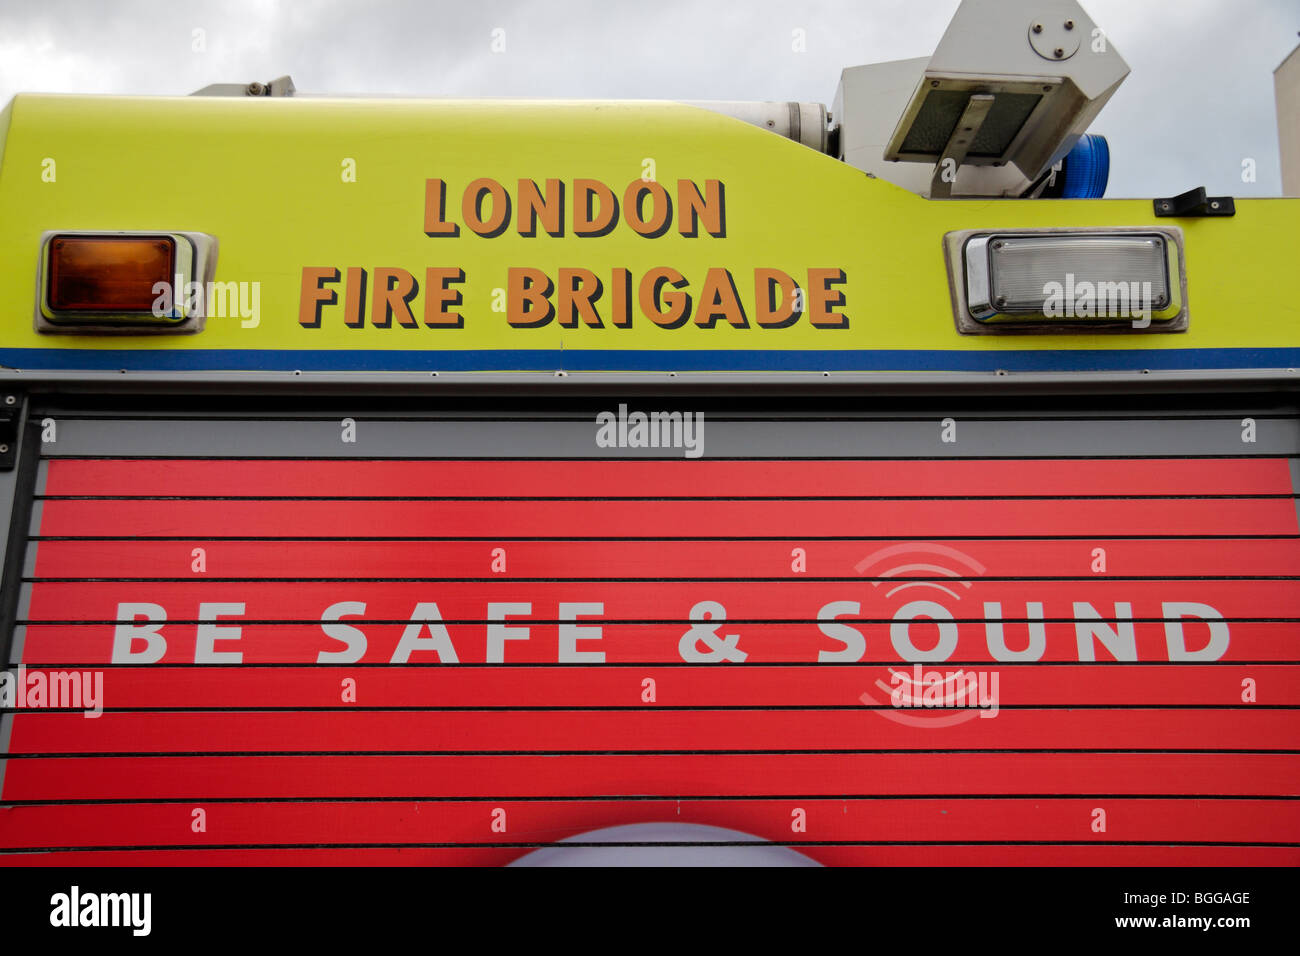 Nahaufnahme von einem Roller doored Schrank an der Seite eines Londoner Feuerwehr mit einer "Be Safe & Sound" Kampagne Anzeige. Stockfoto